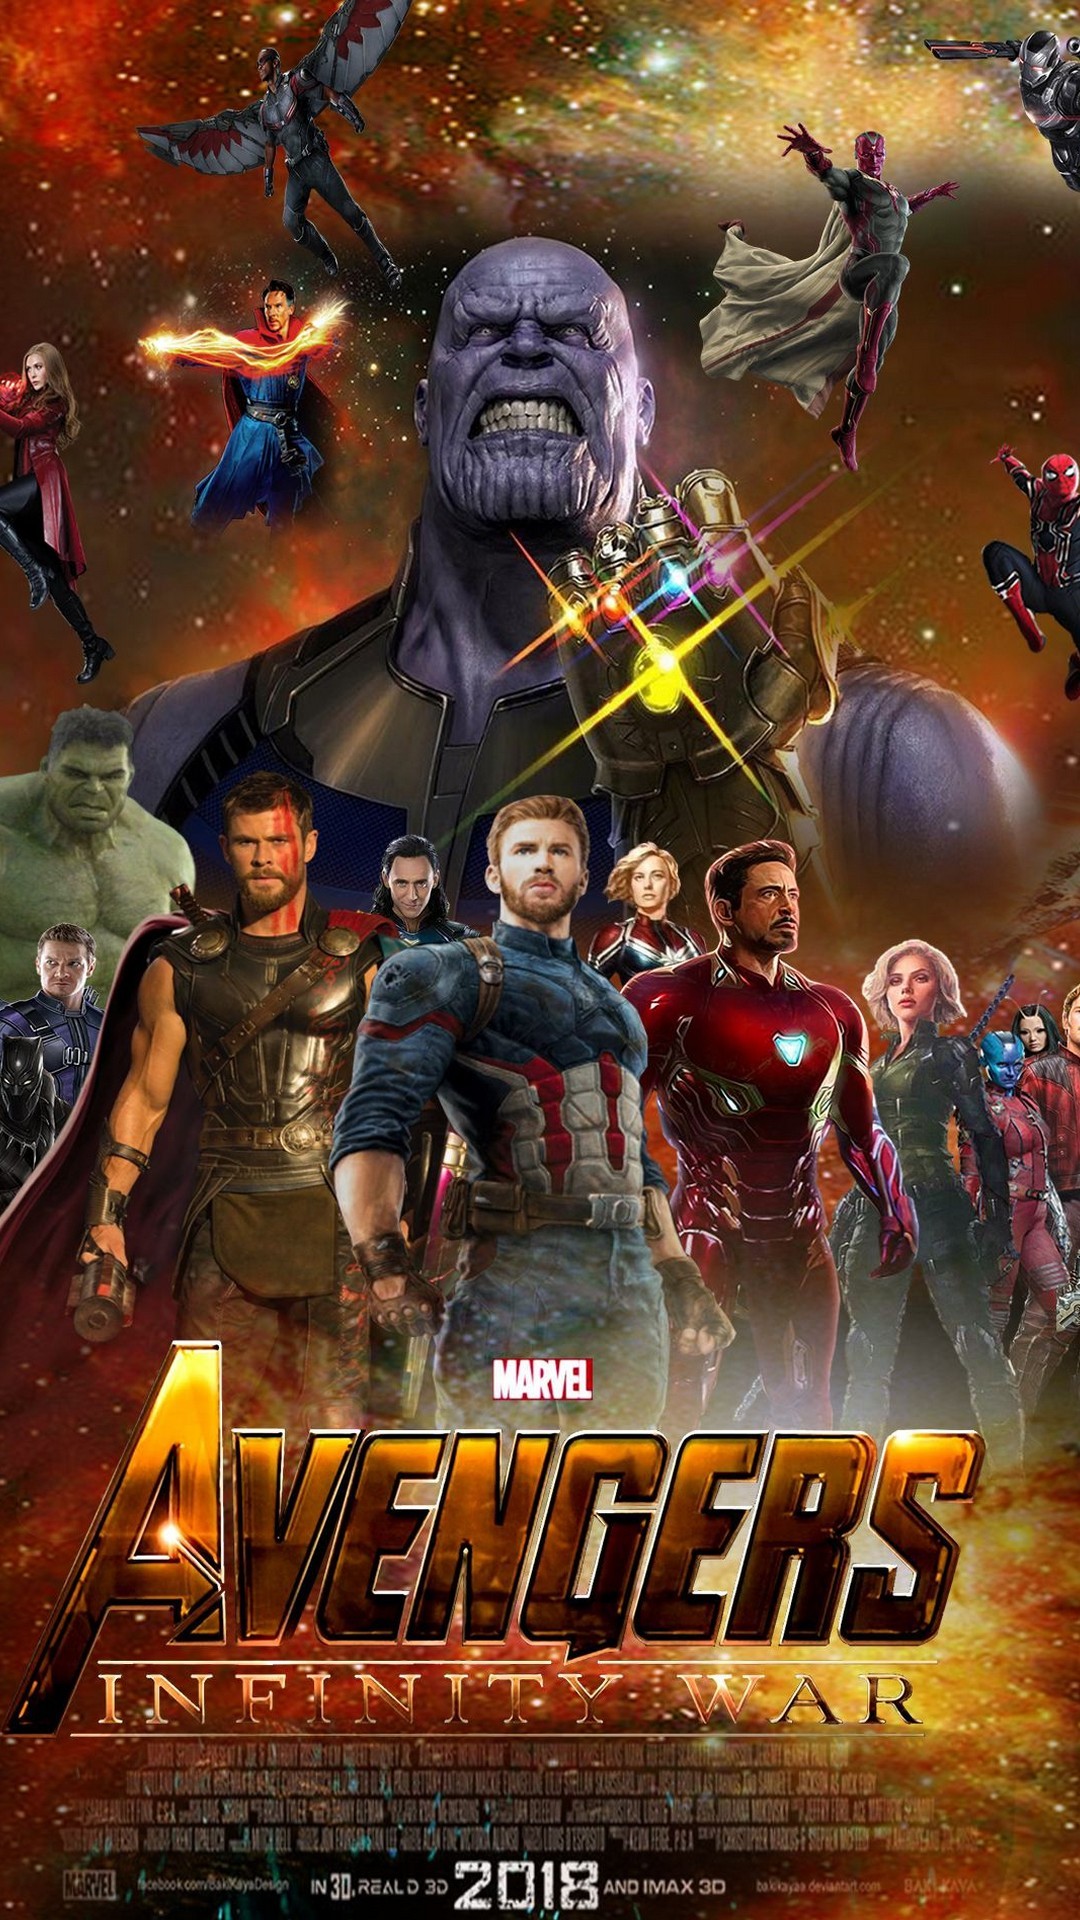 iPhone 7 Wallpaper Avengers Infinity War resolution 1080x1920